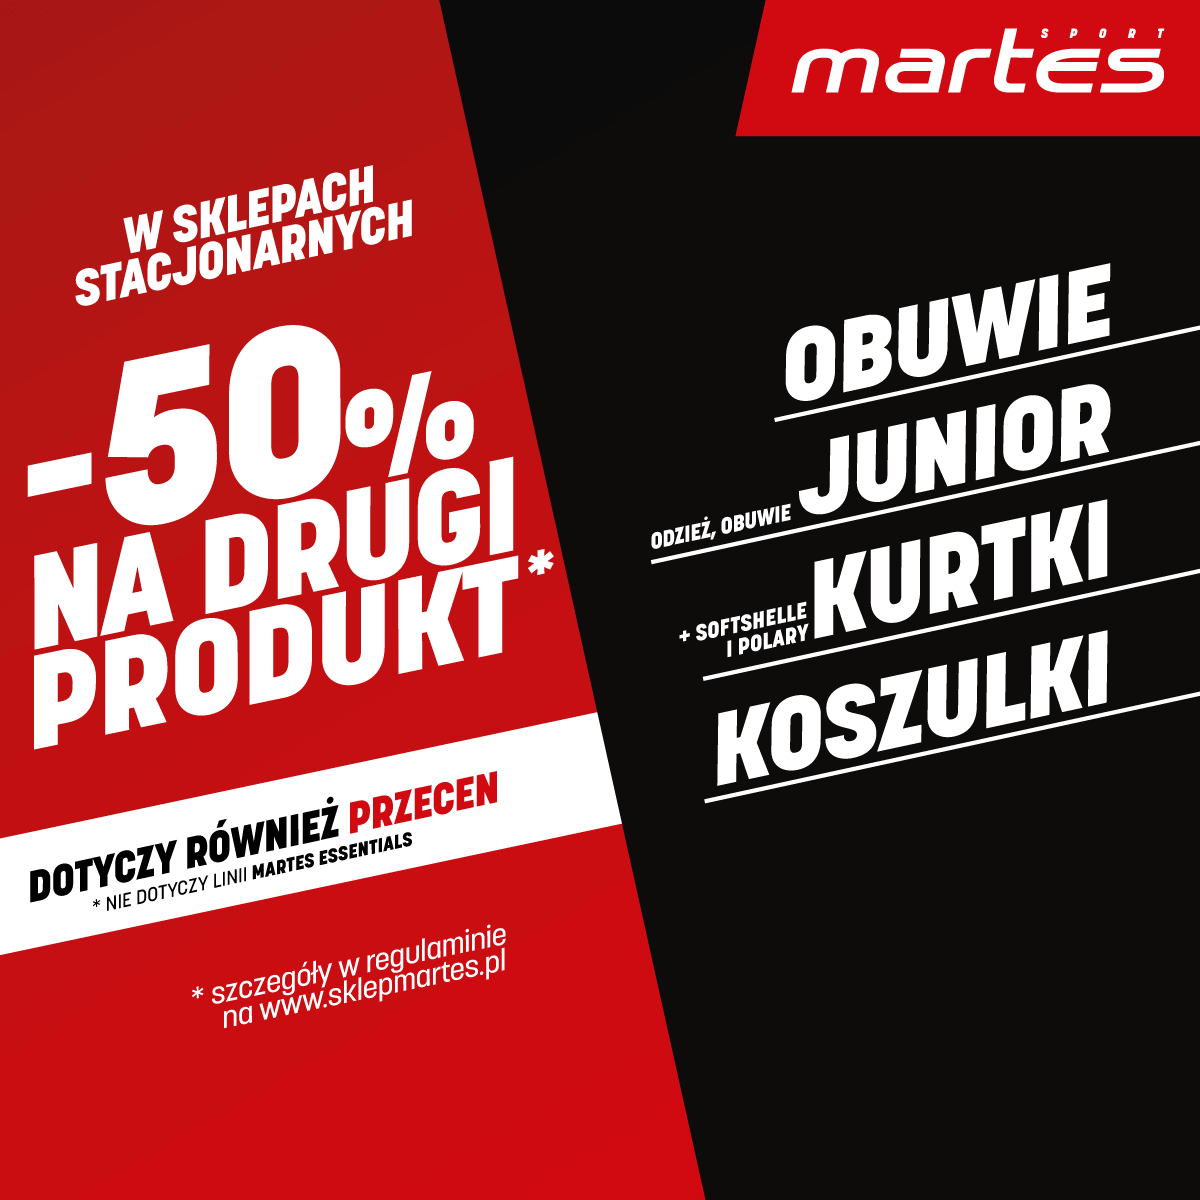 Martes Sport, -50% na drugi produkt w Martes Sport